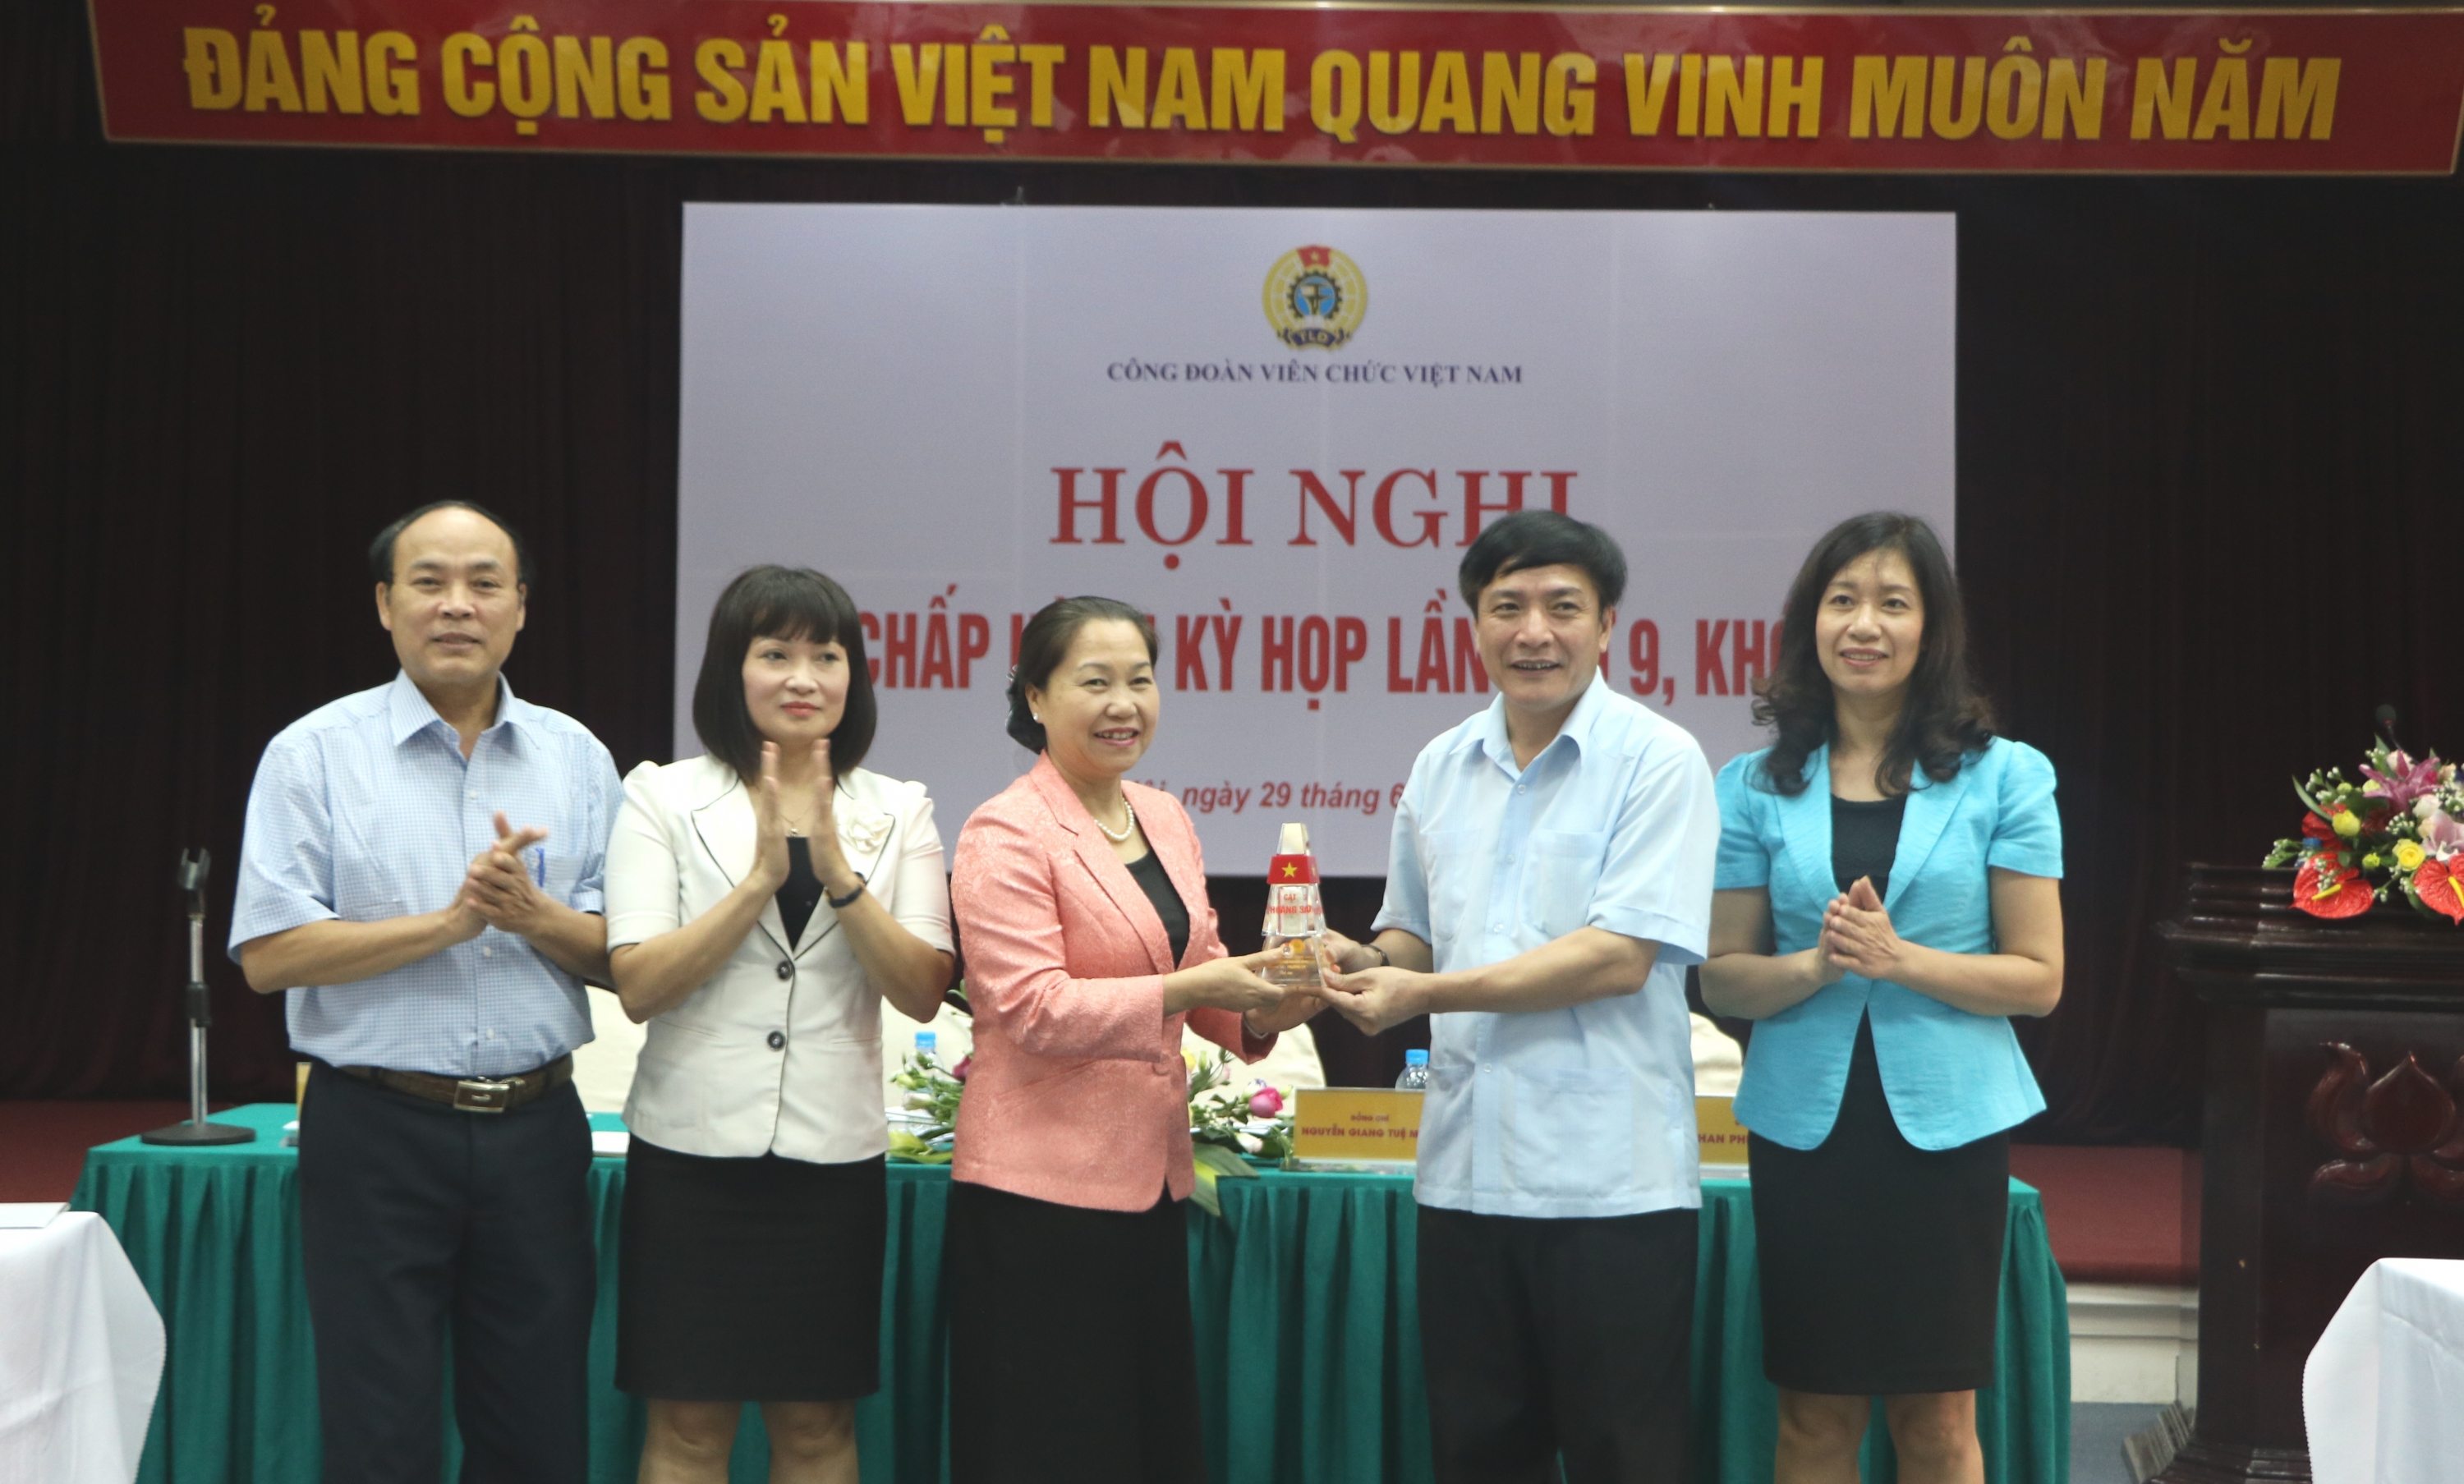 Hội nghị lần thứ 9 Ban Chấp hành Công đoàn Viên chức Việt Nam khóa IV, nhiệm kỳ 2013 – 2018